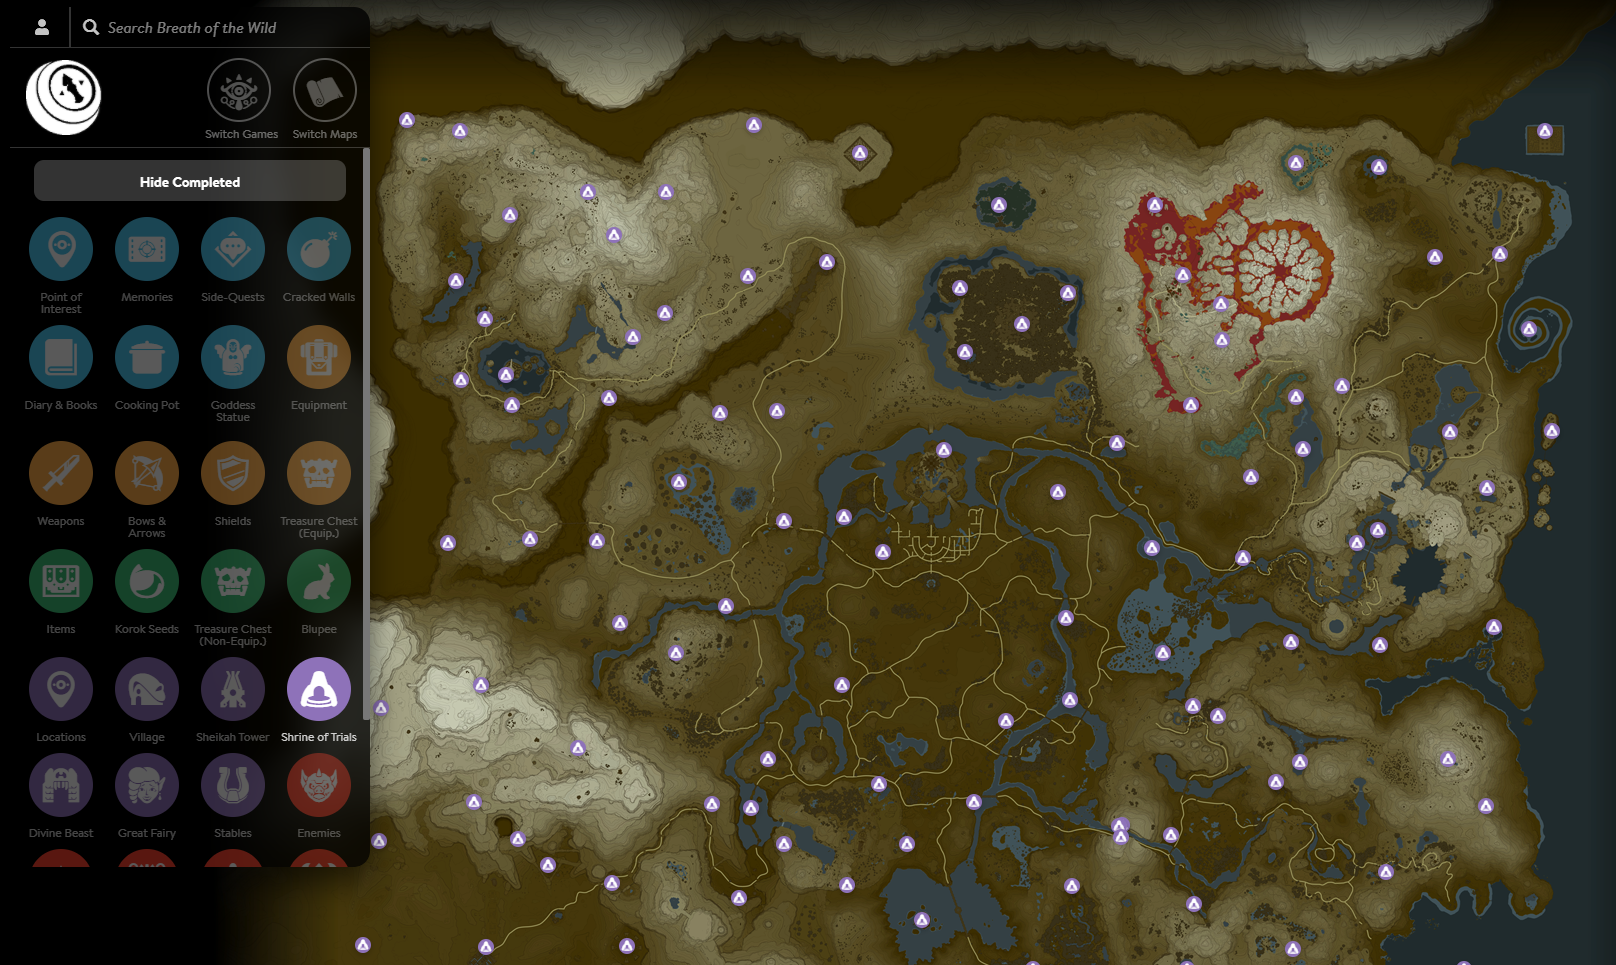 Mapa completo e interactivo de Zelda Breath of the Wild